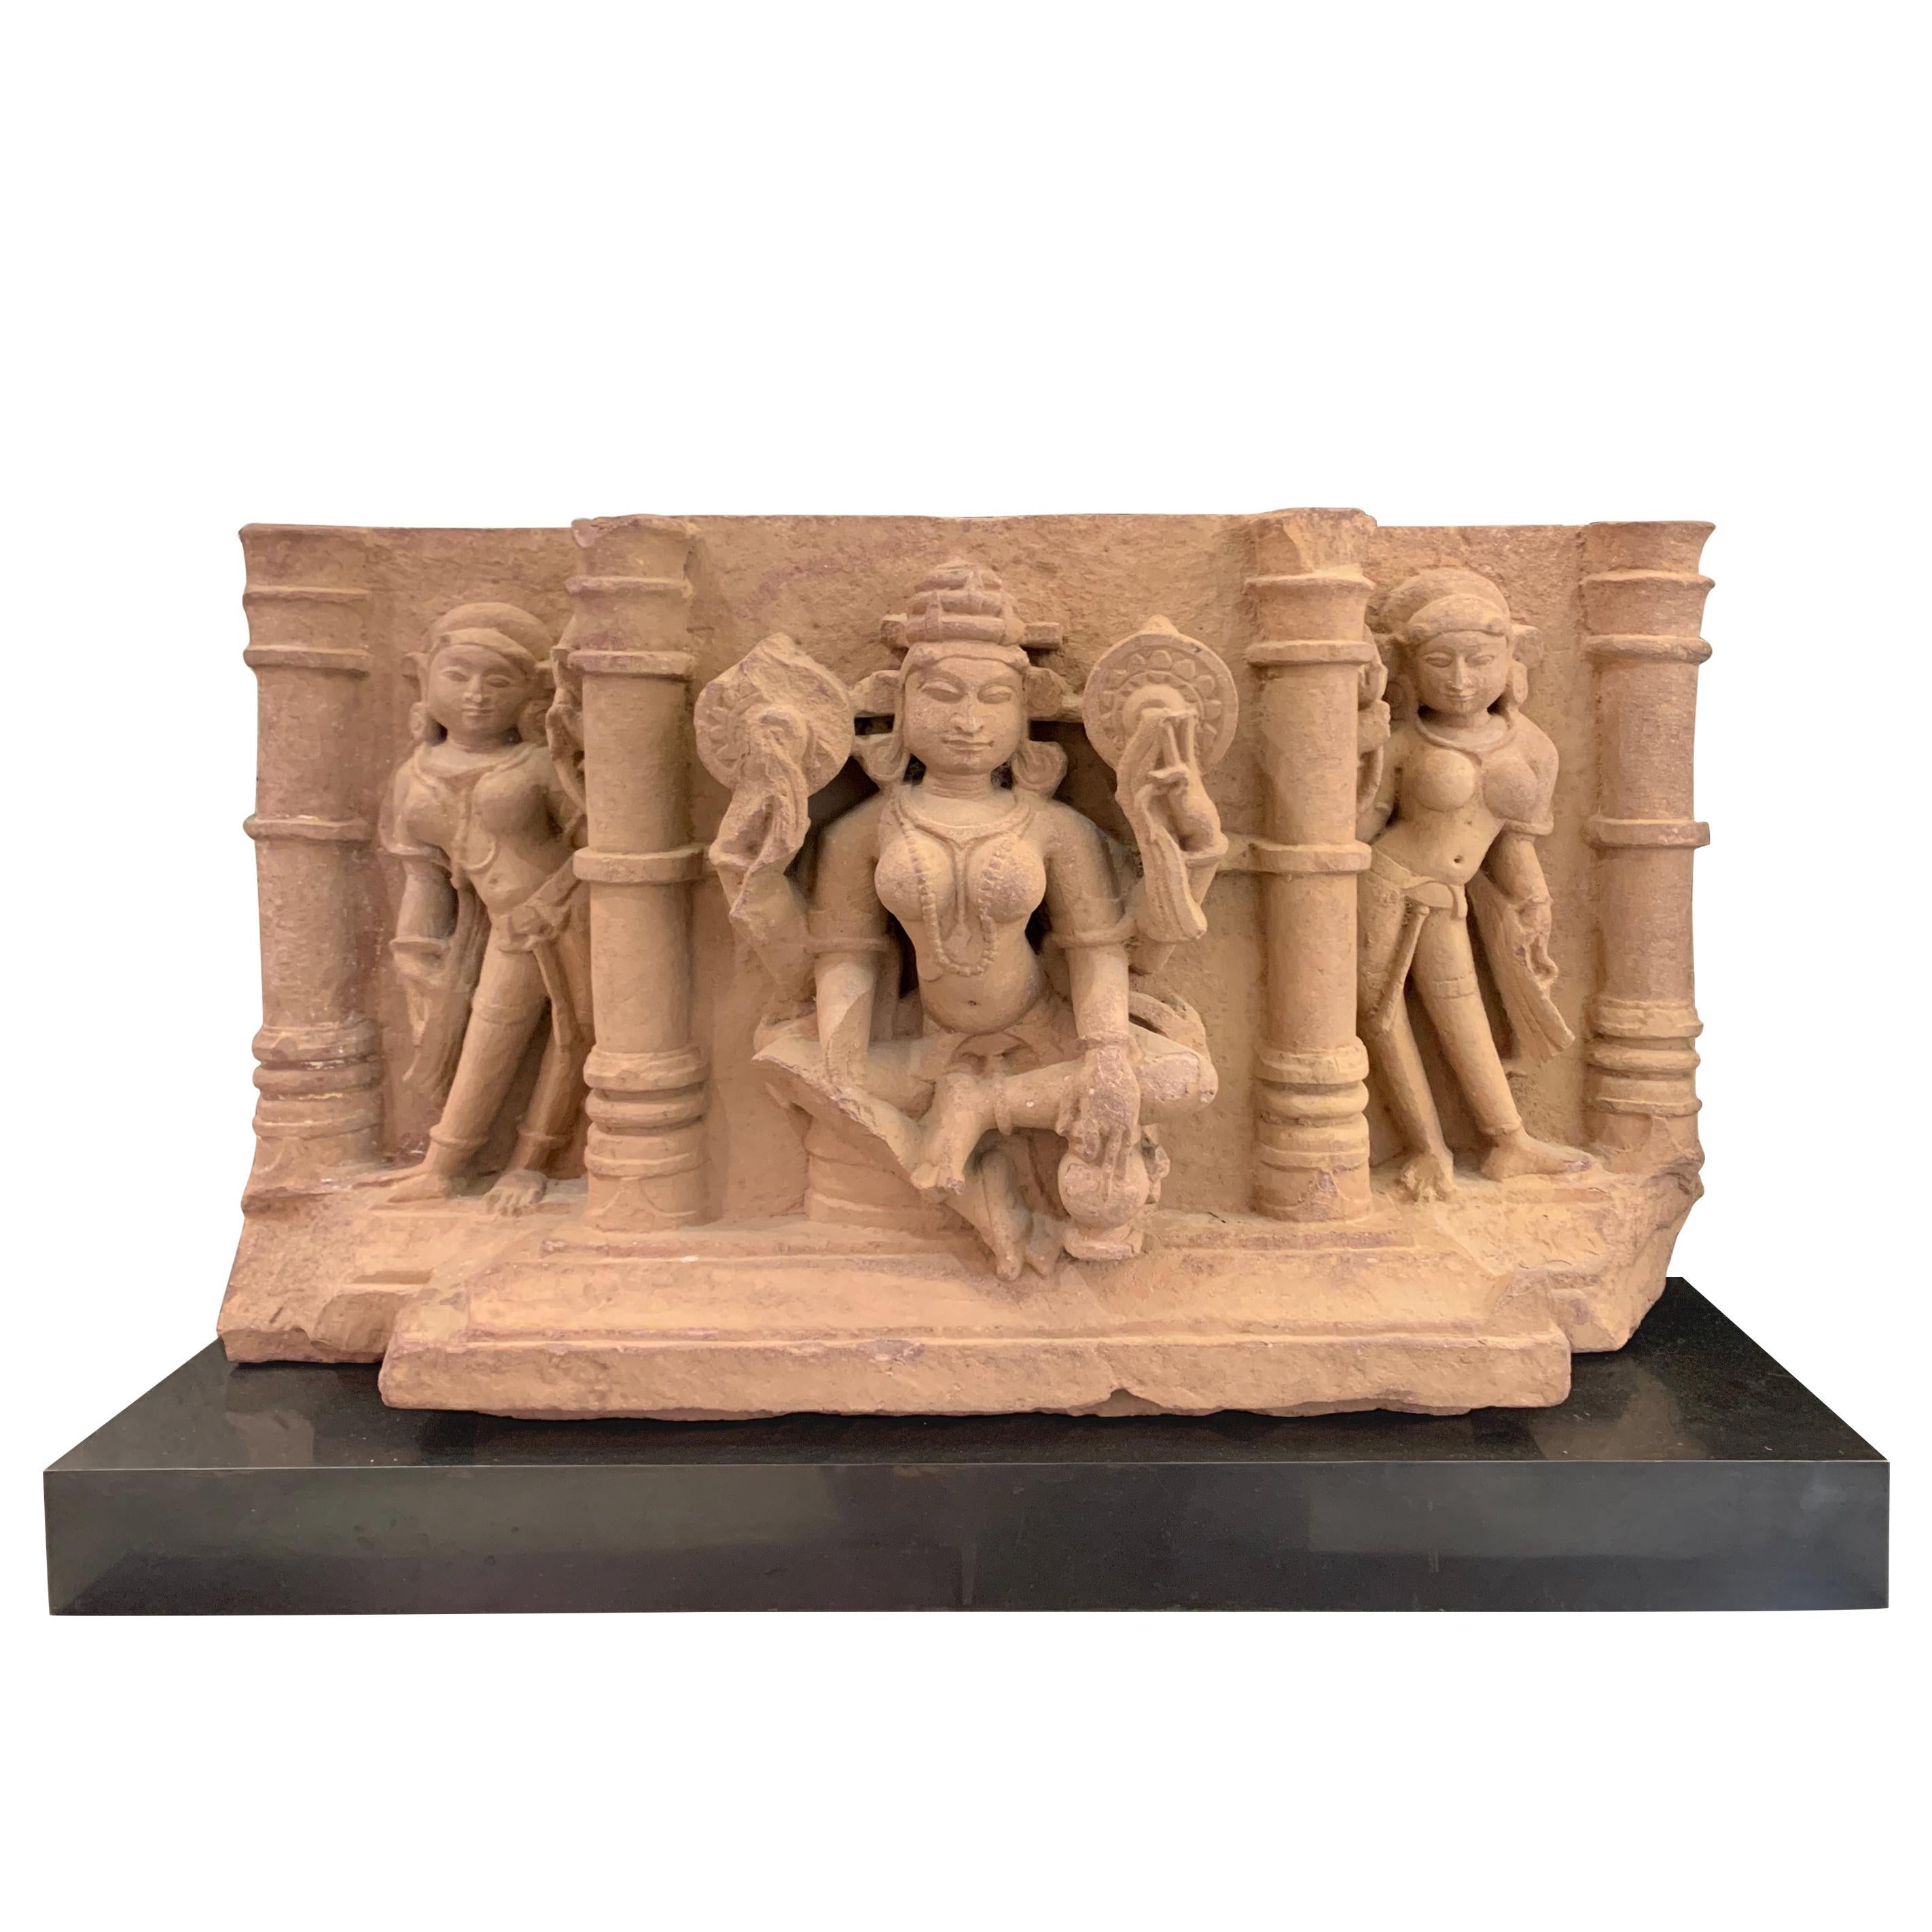 Indischer geschnitzter Sandstein-Fries von Lakshmi, Zentralindien, 10.-11. Jahrhundert